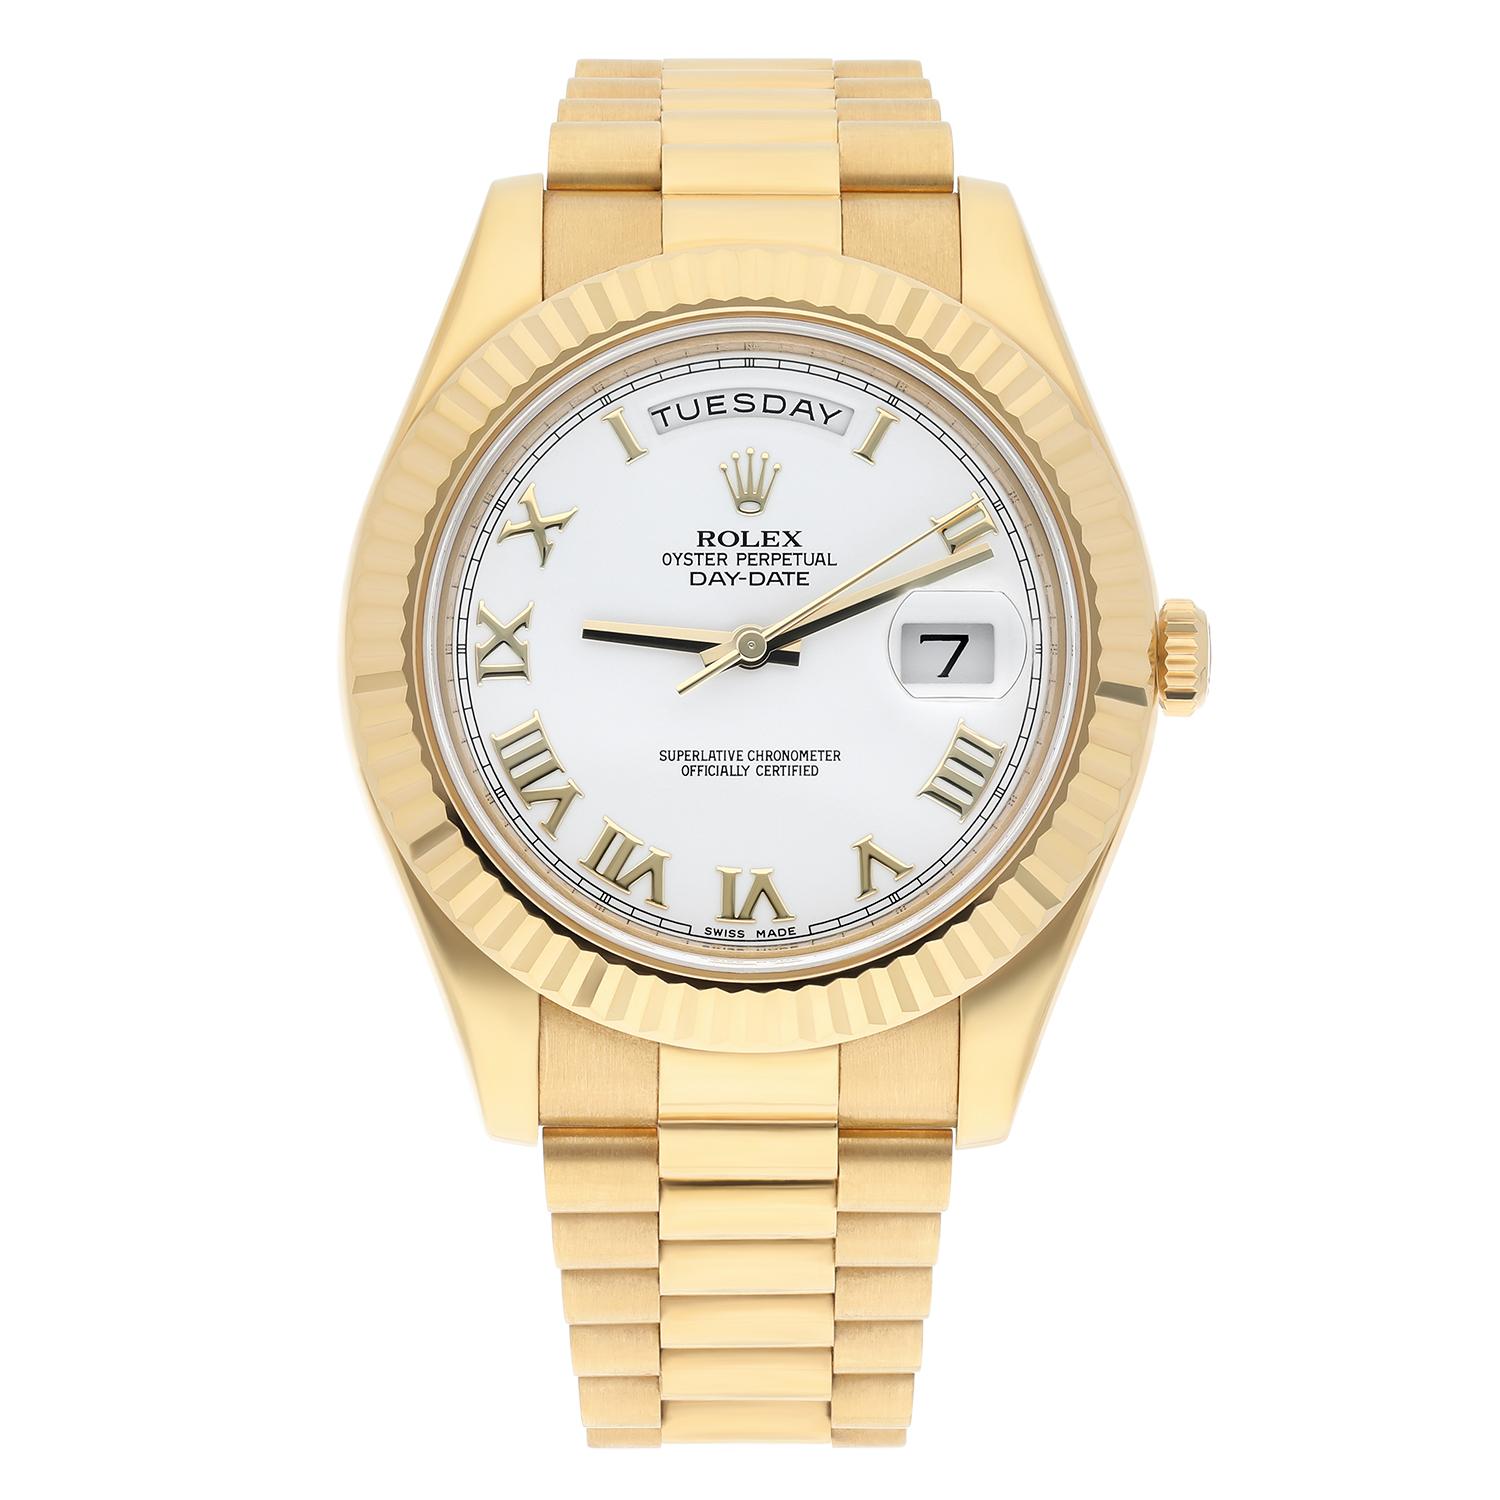 Élevez votre style avec cette luxueuse montre-bracelet Rolex Day-Date II 218238. Le boîtier et le bracelet en or jaune exhalent l'opulence et la sophistication, tandis que le cadran romain blanc avec indicateurs du jour et de la date et la lunette